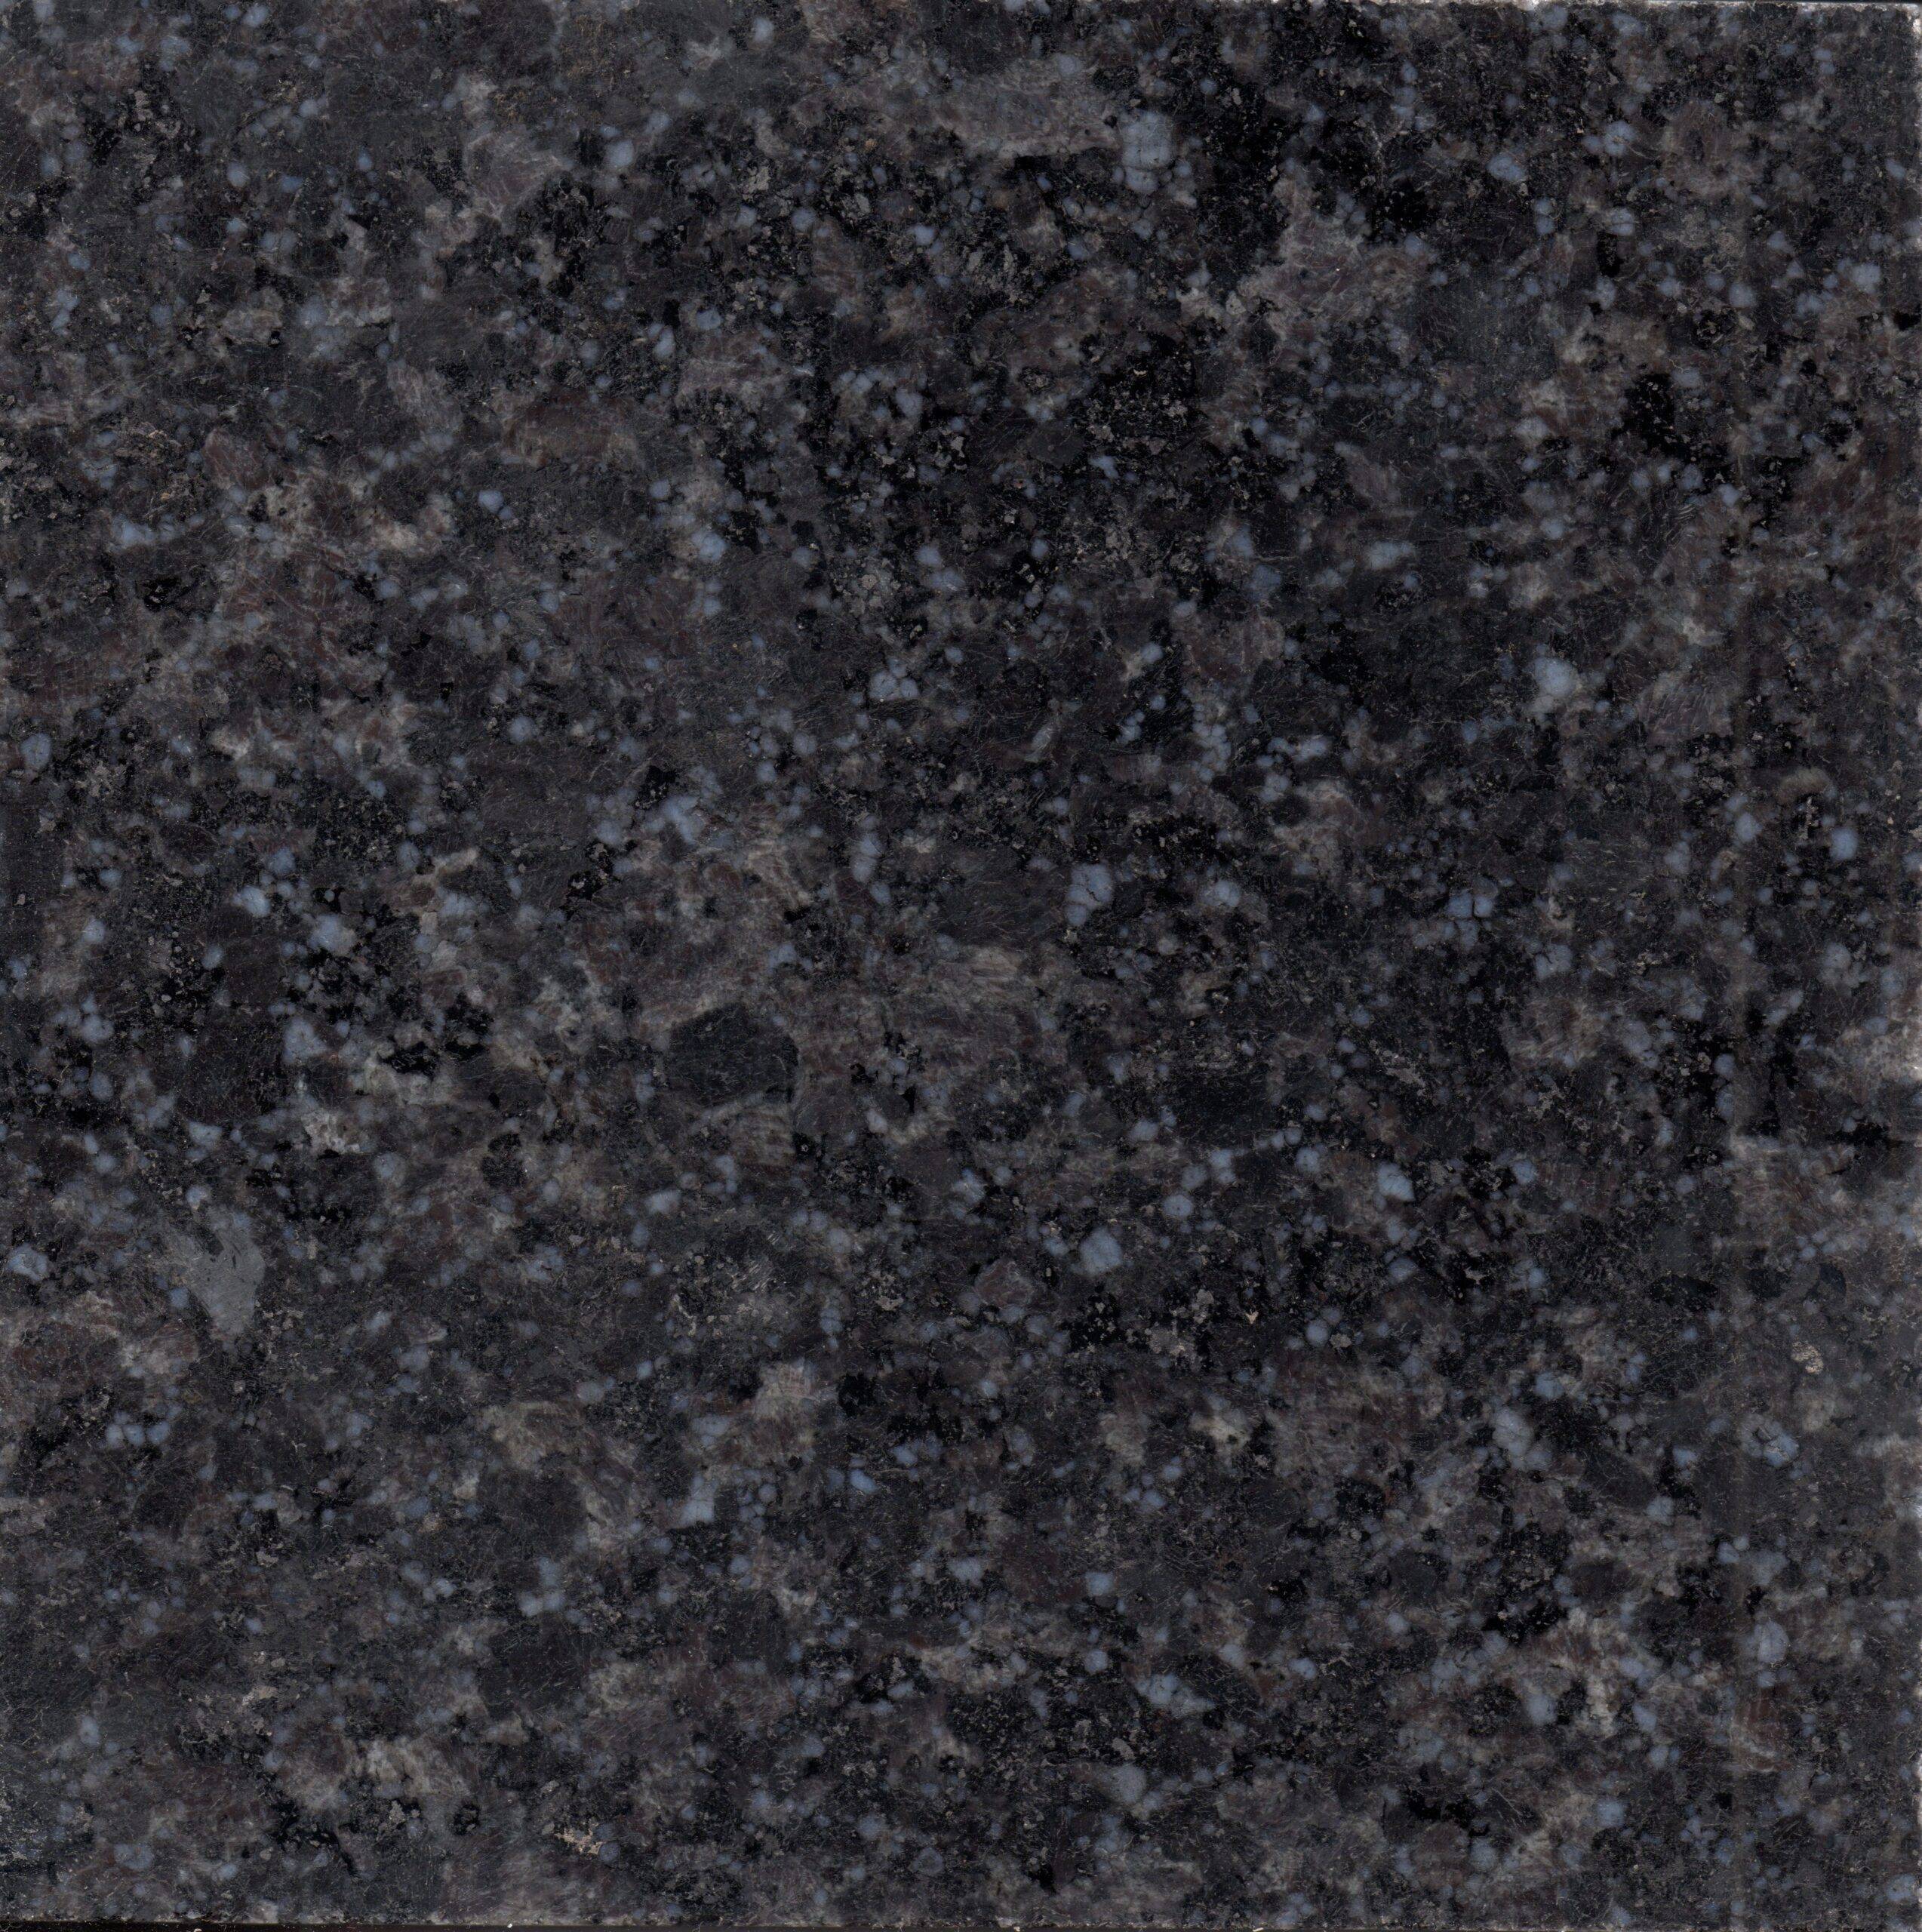 Rajasthan Black Granite Closeup